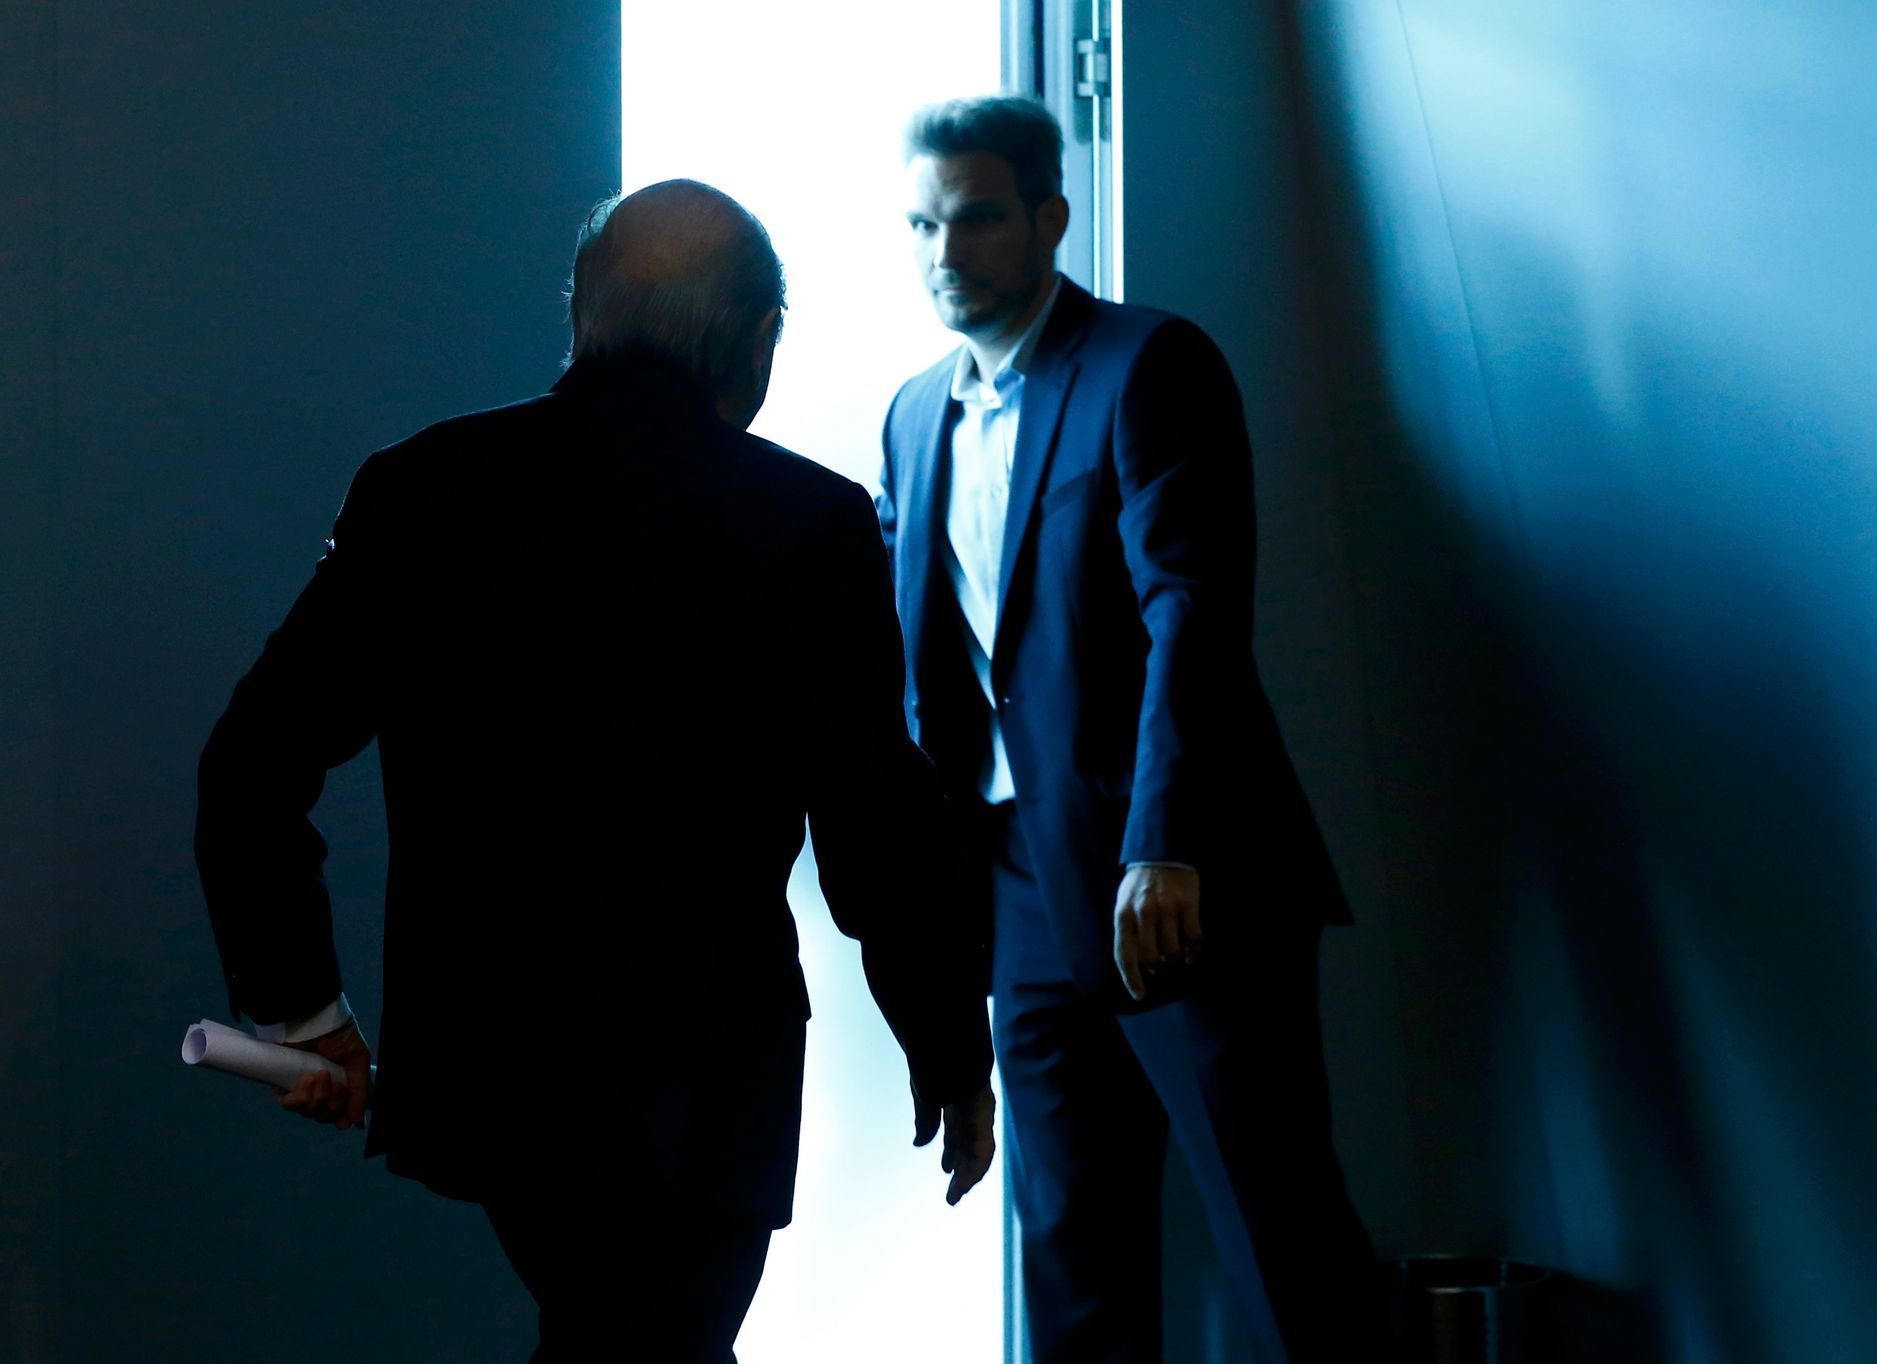 Prezident FIFA Blatter odchází poté, co oznámil svou rezignaci.